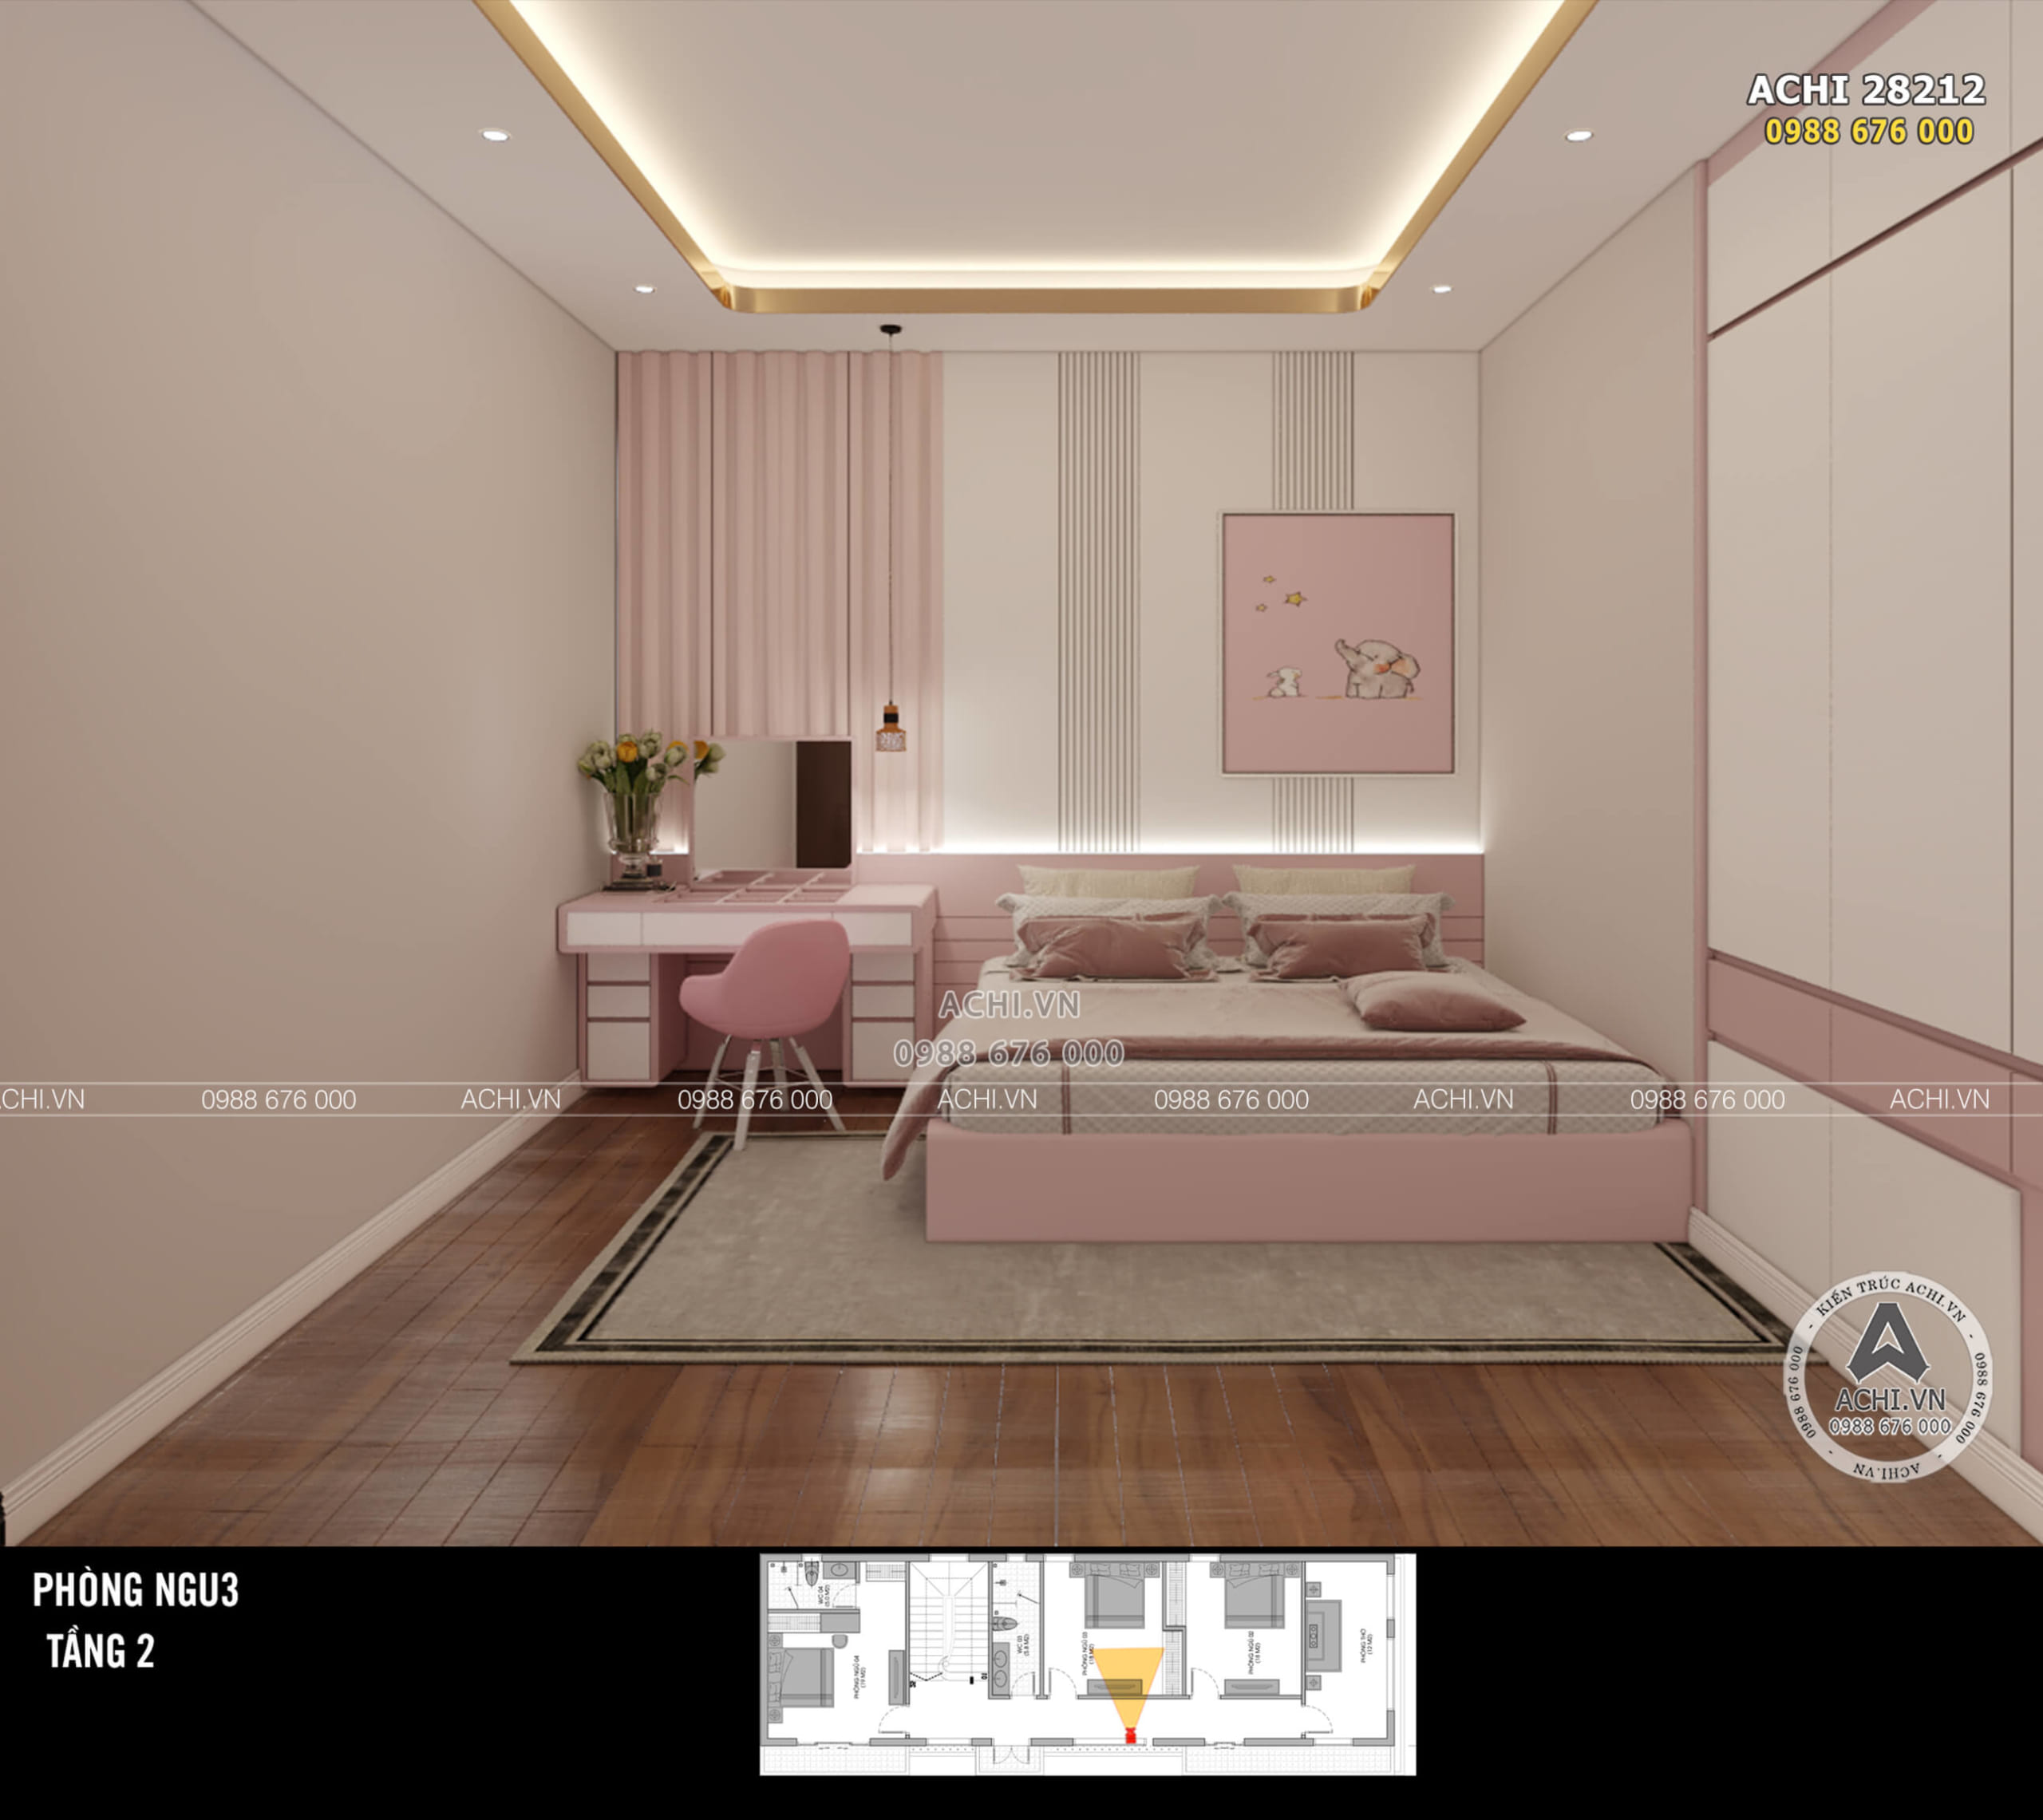 Thiết kế phòng ngủ bé gái bằng gỗ óc chó với tone màu hồng nữ tính